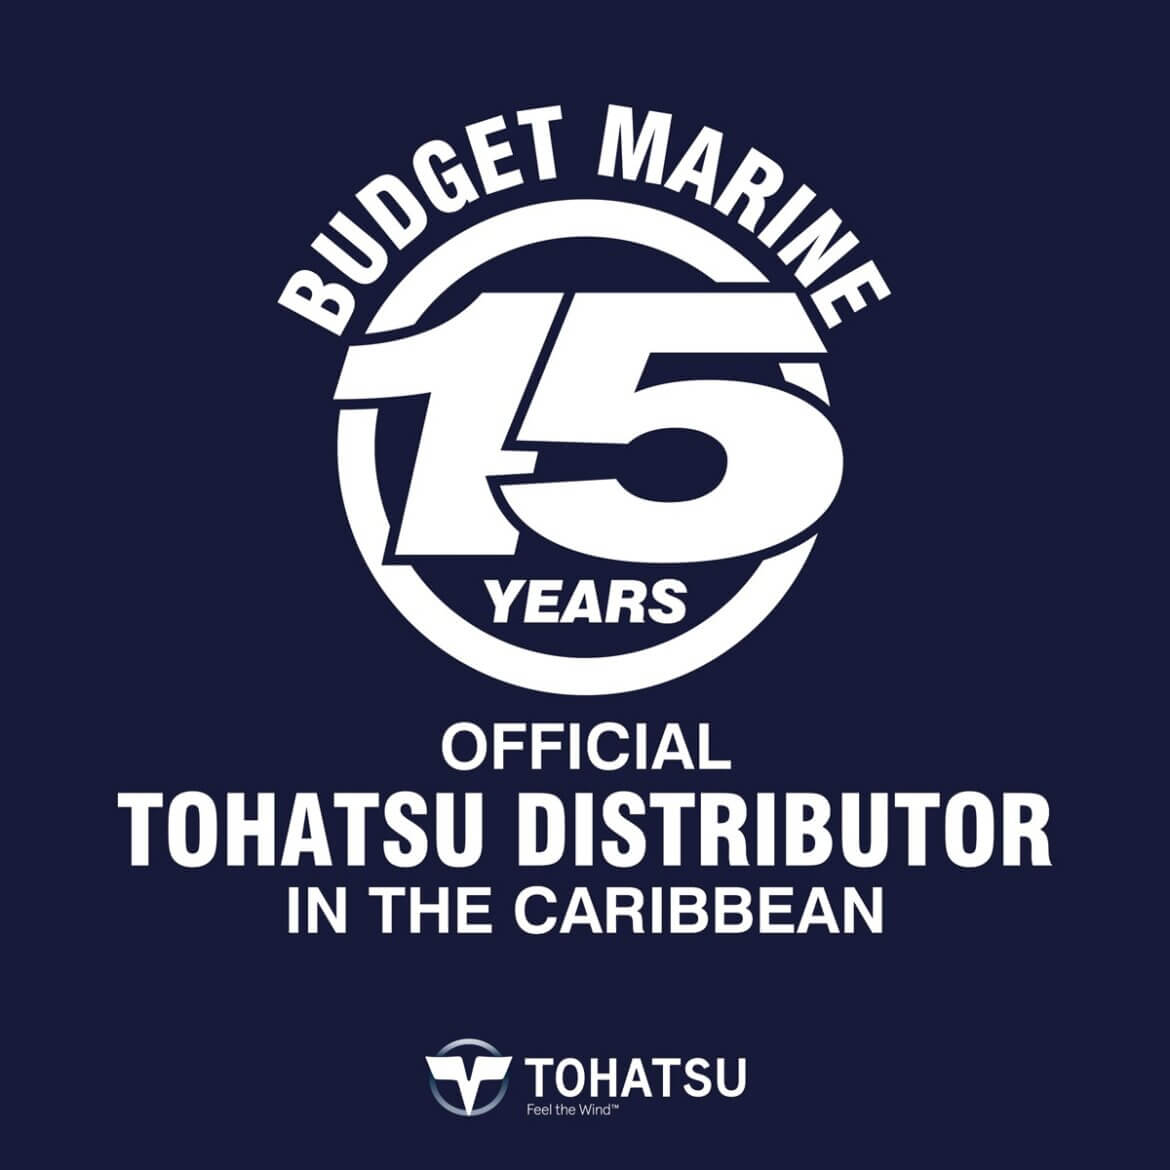 Budget Marine Curaçao 11